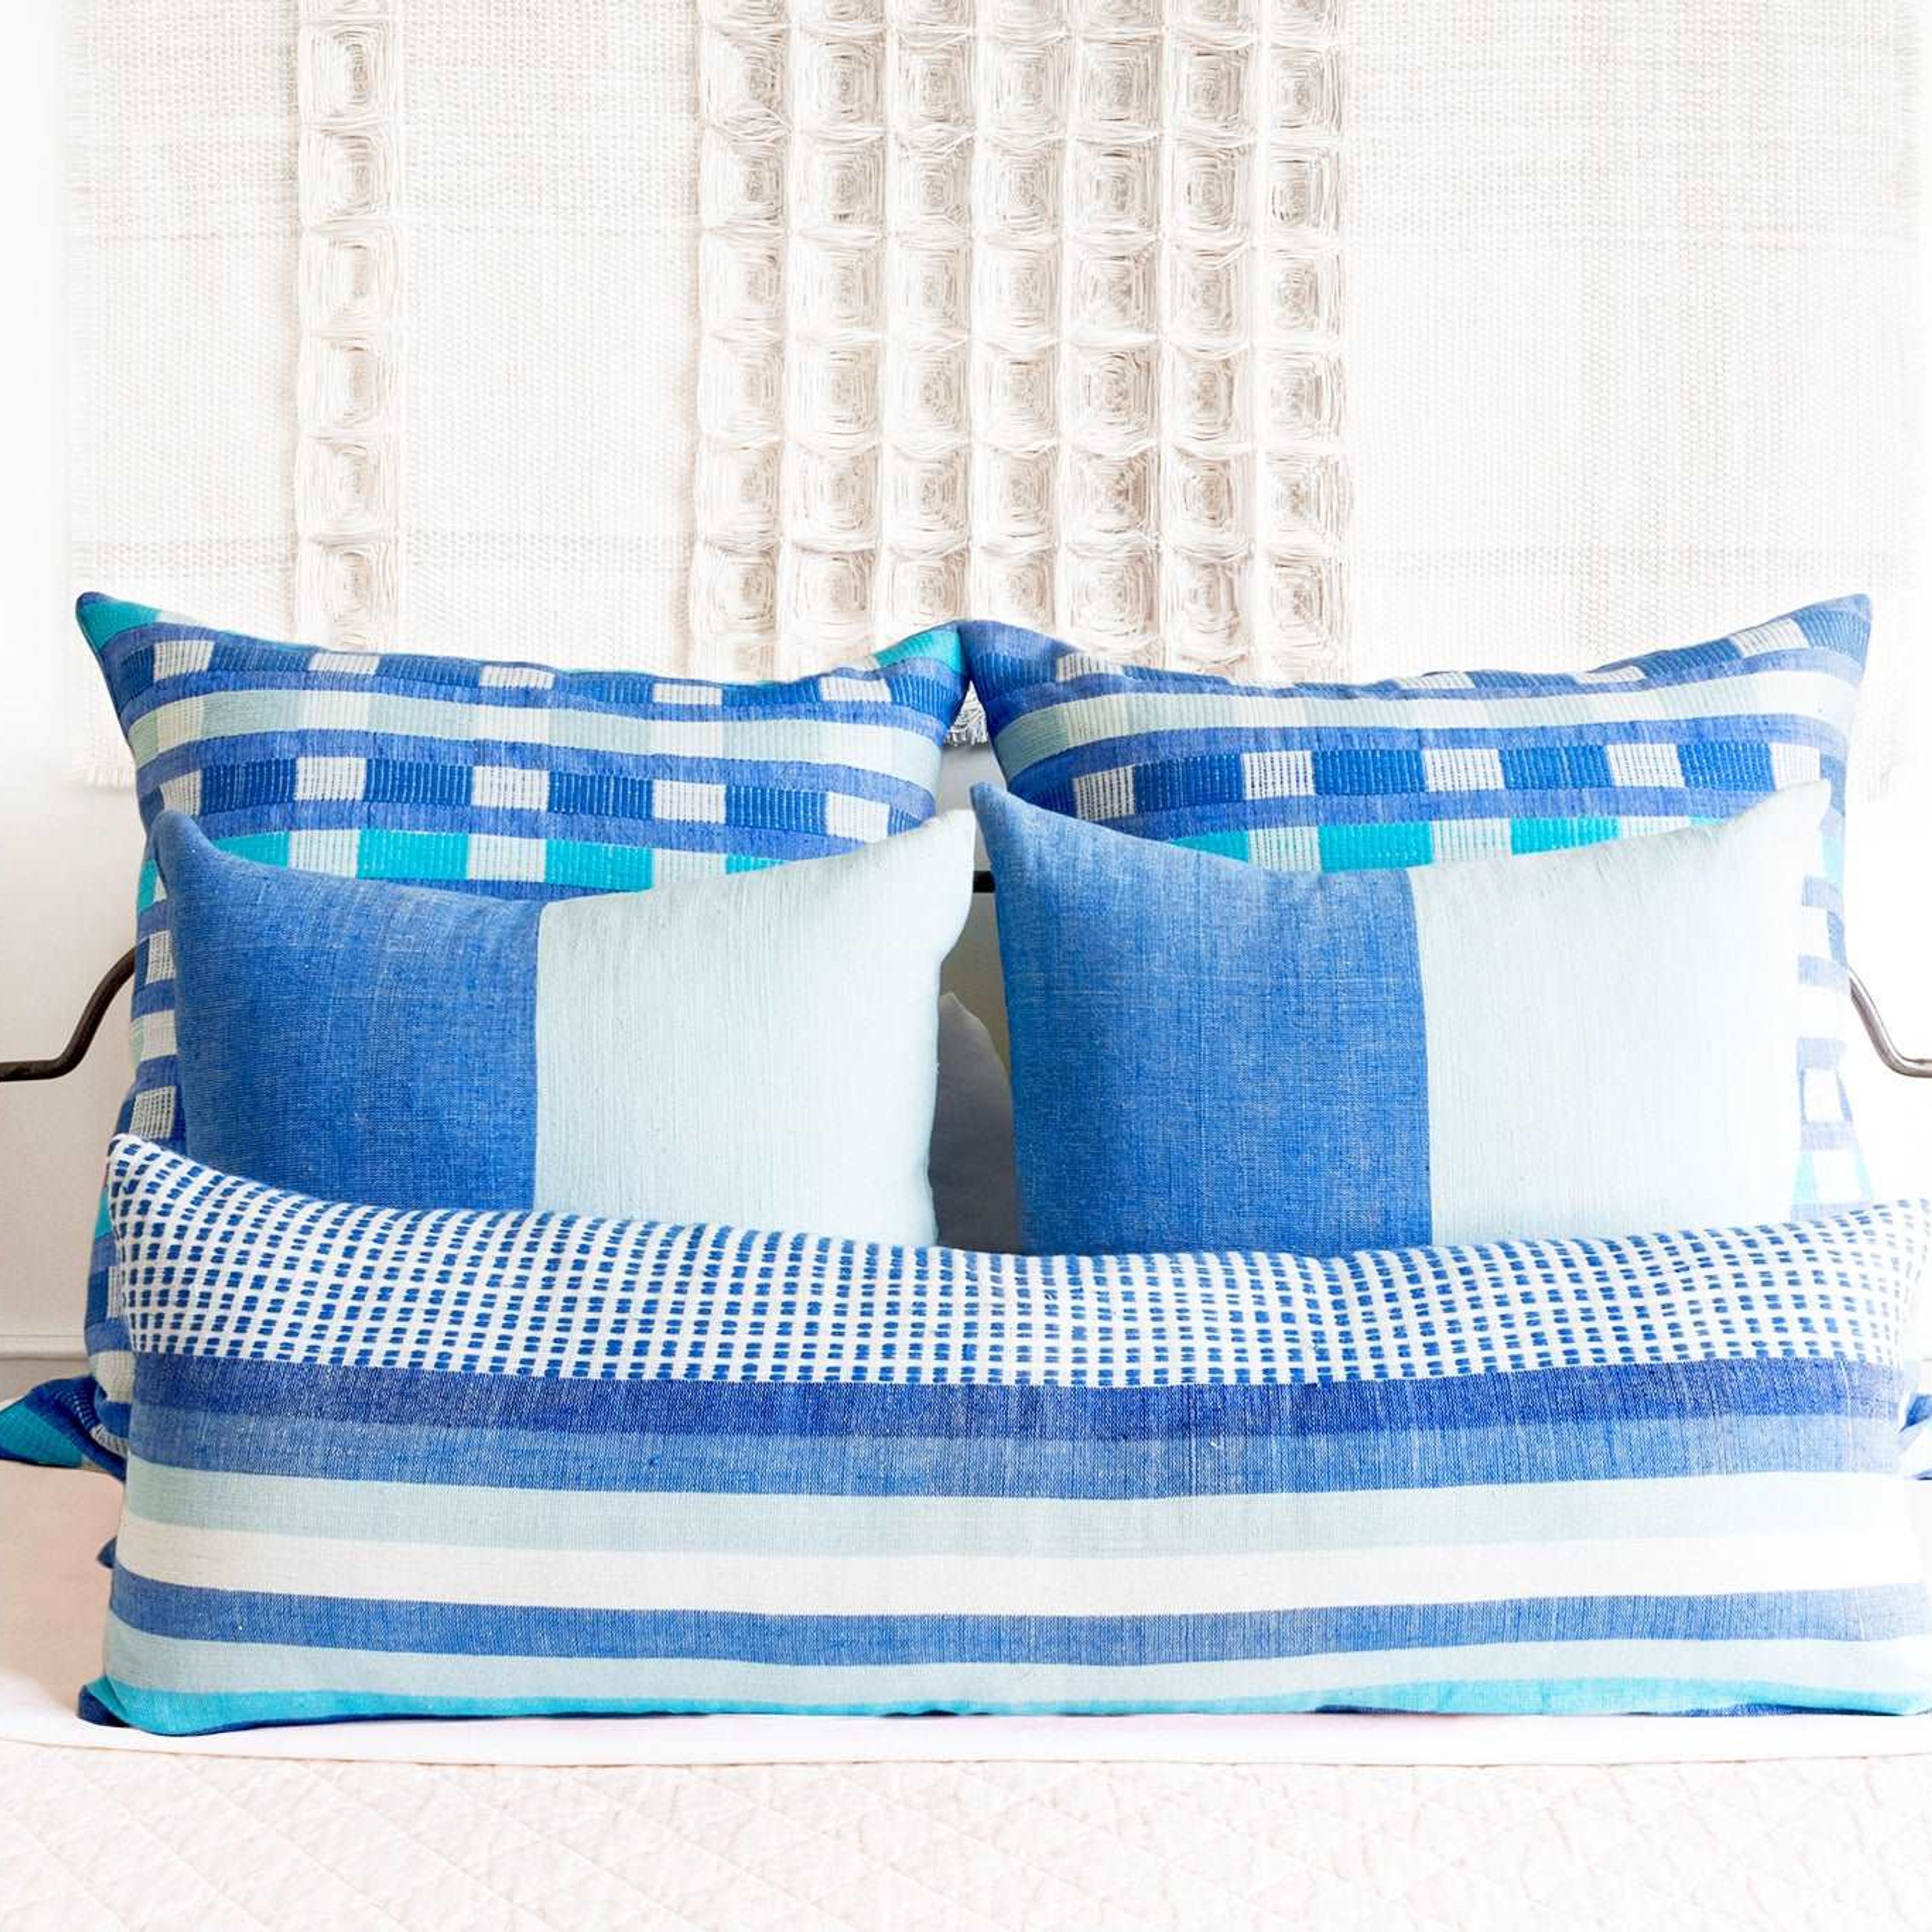 Coordinated Pillows - Azure